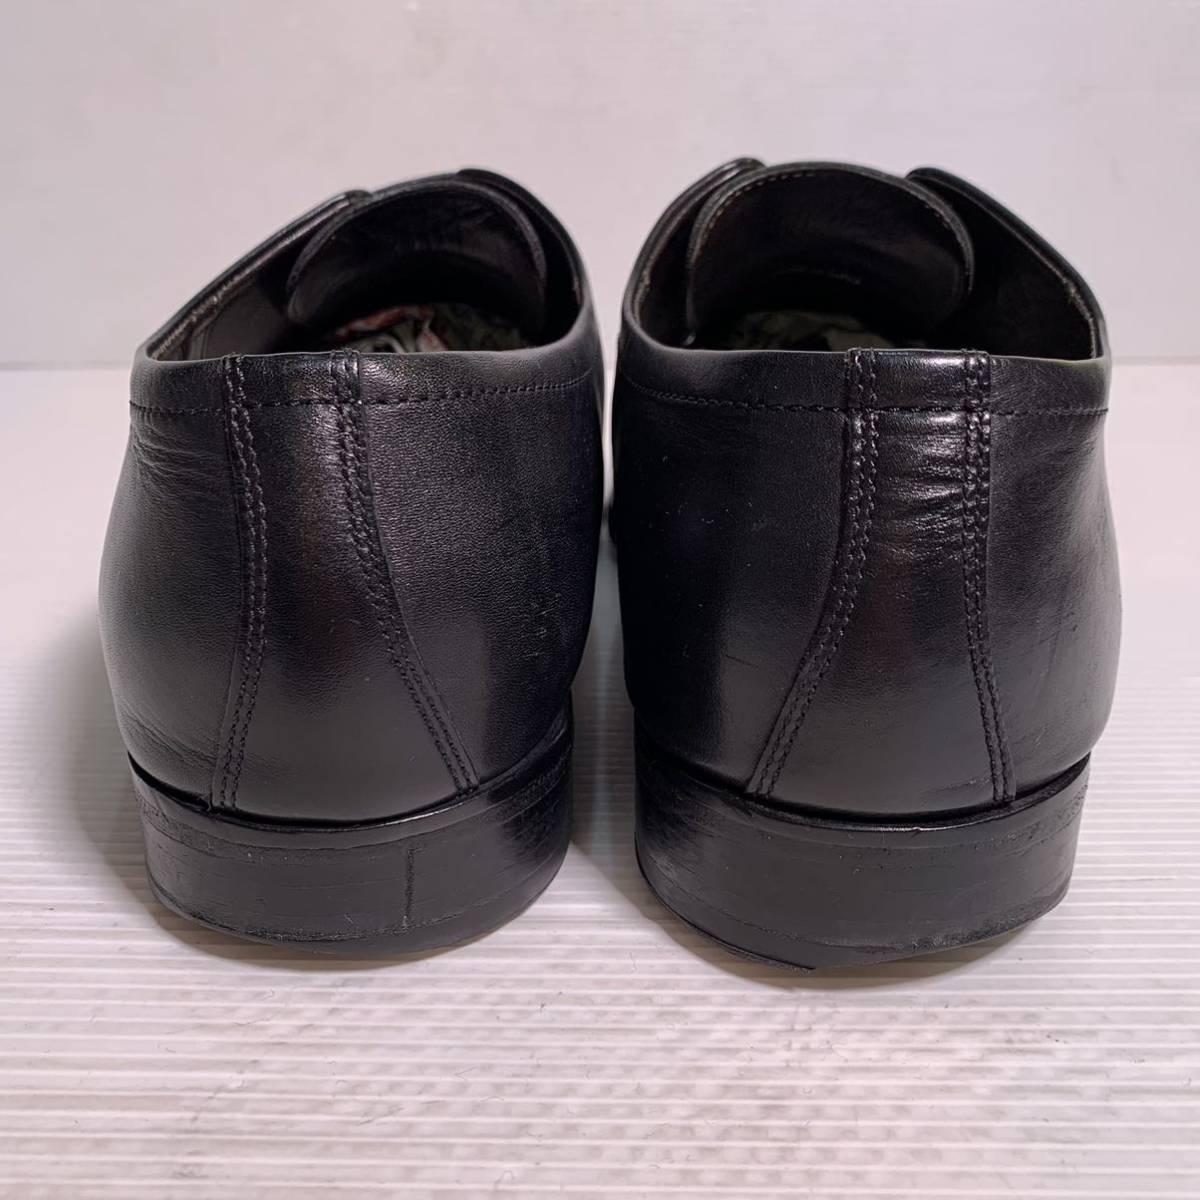 ヒューゴボス ビジネスシューズ 革靴 ストレートチップ 本革 黒 レザーシューズ ドレスシューズ ブラック 紳士靴_画像3